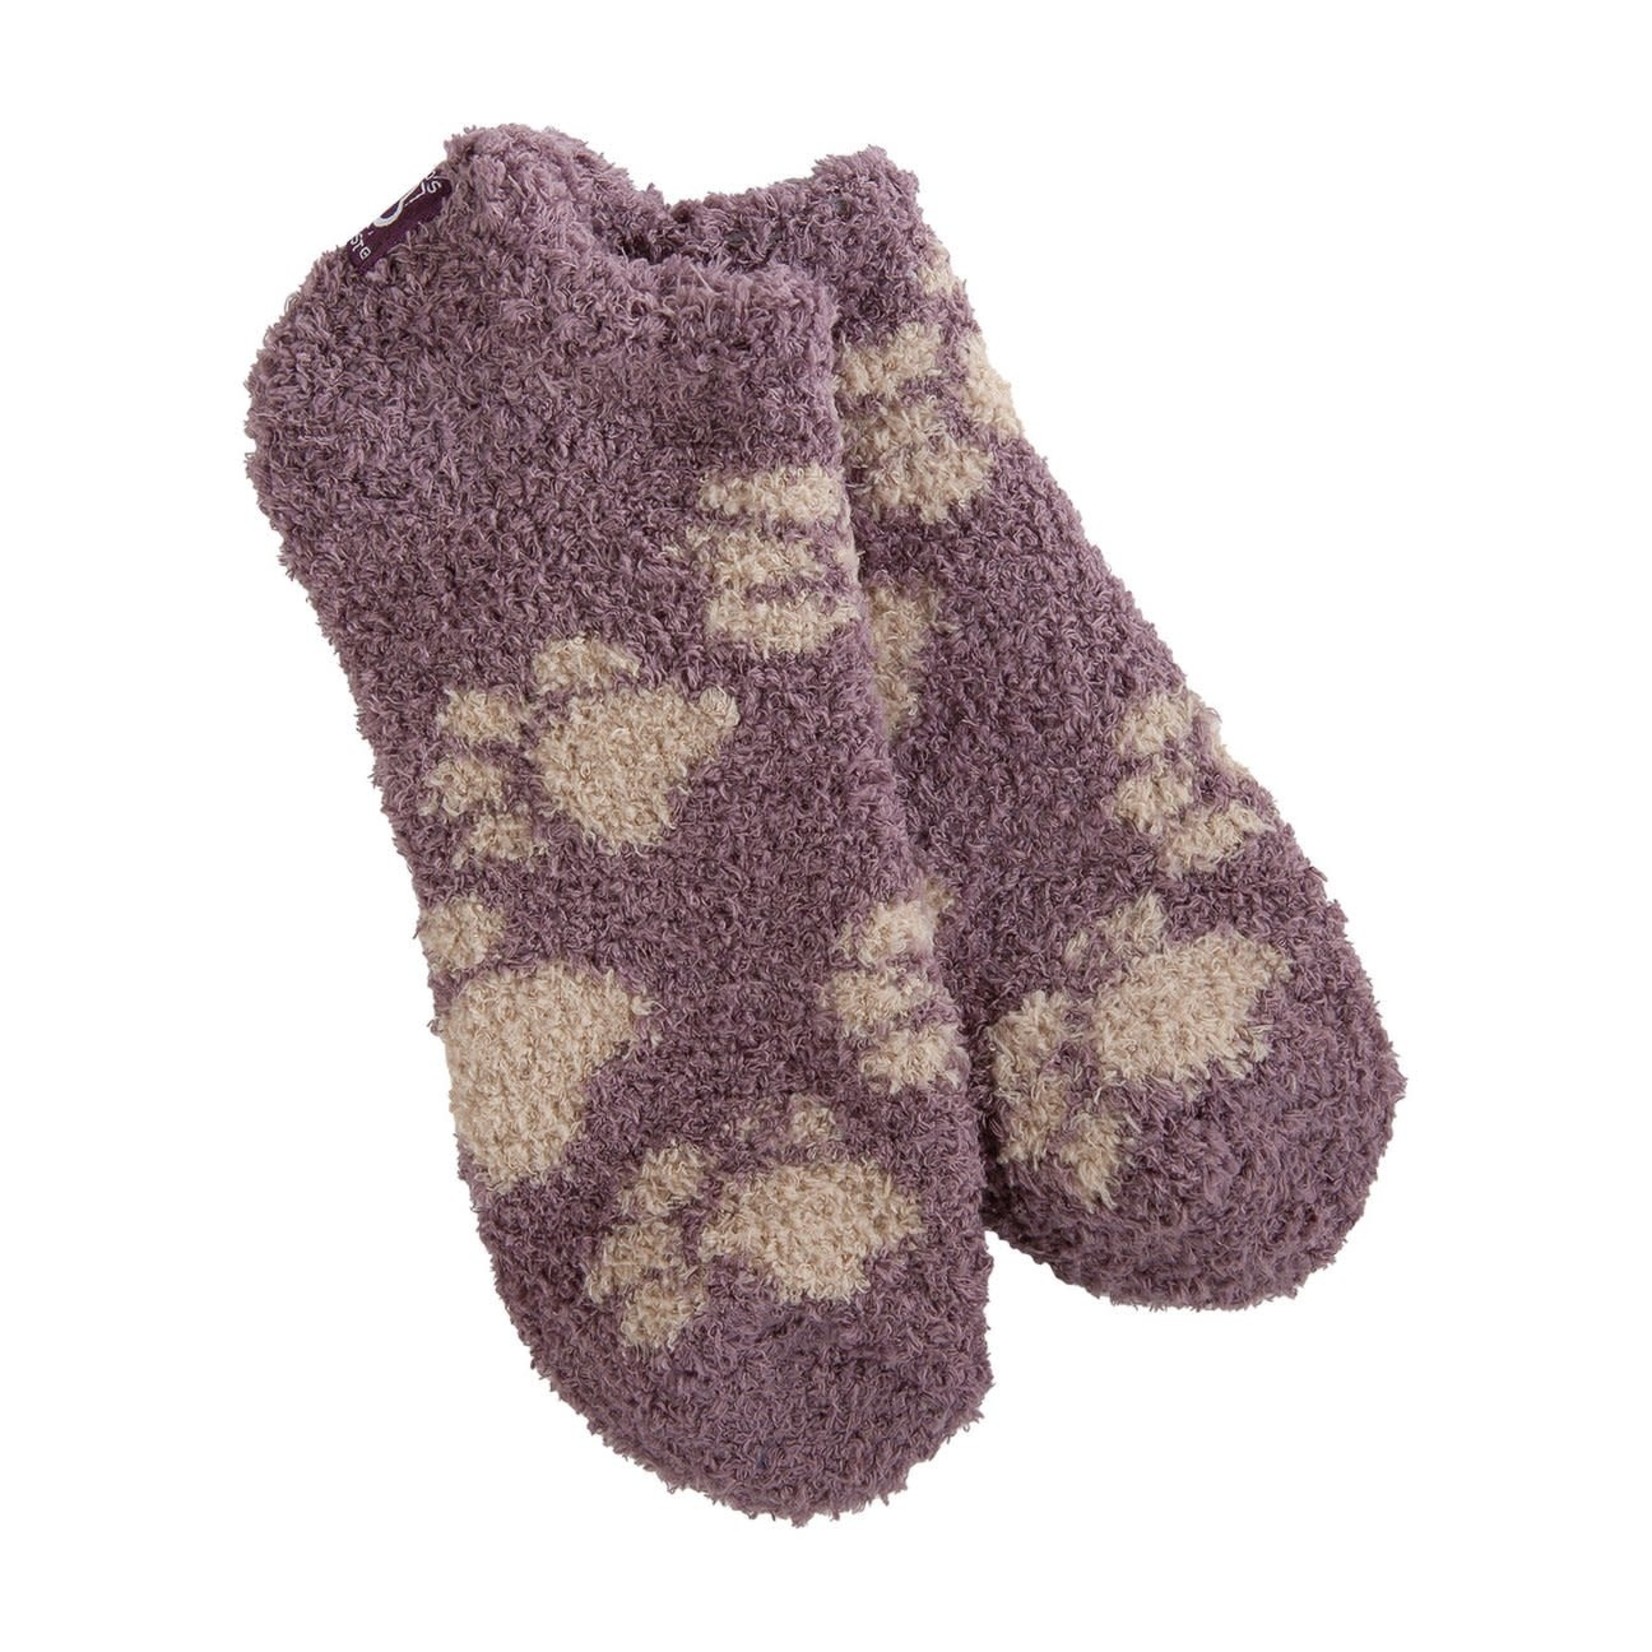 World's Softest Cozy Low Socks - Puppy Print